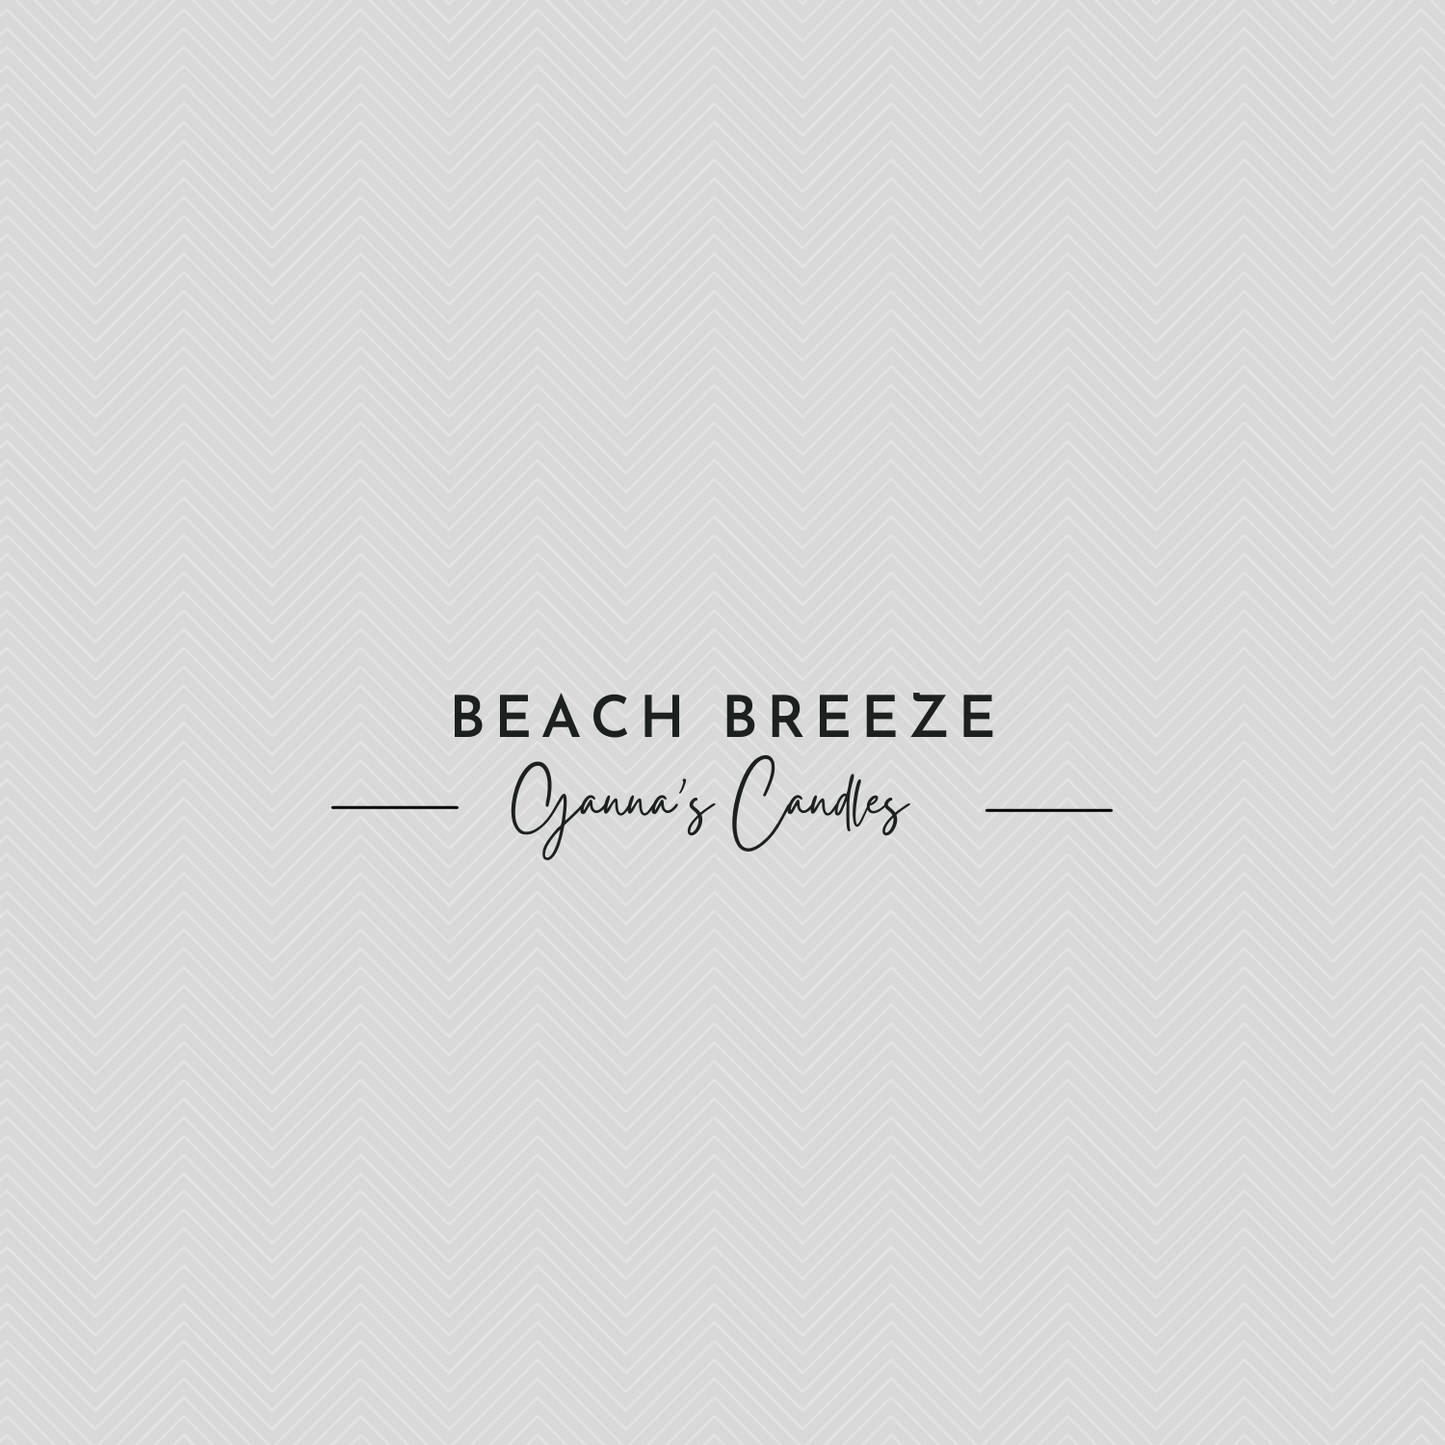 Beach Breeze